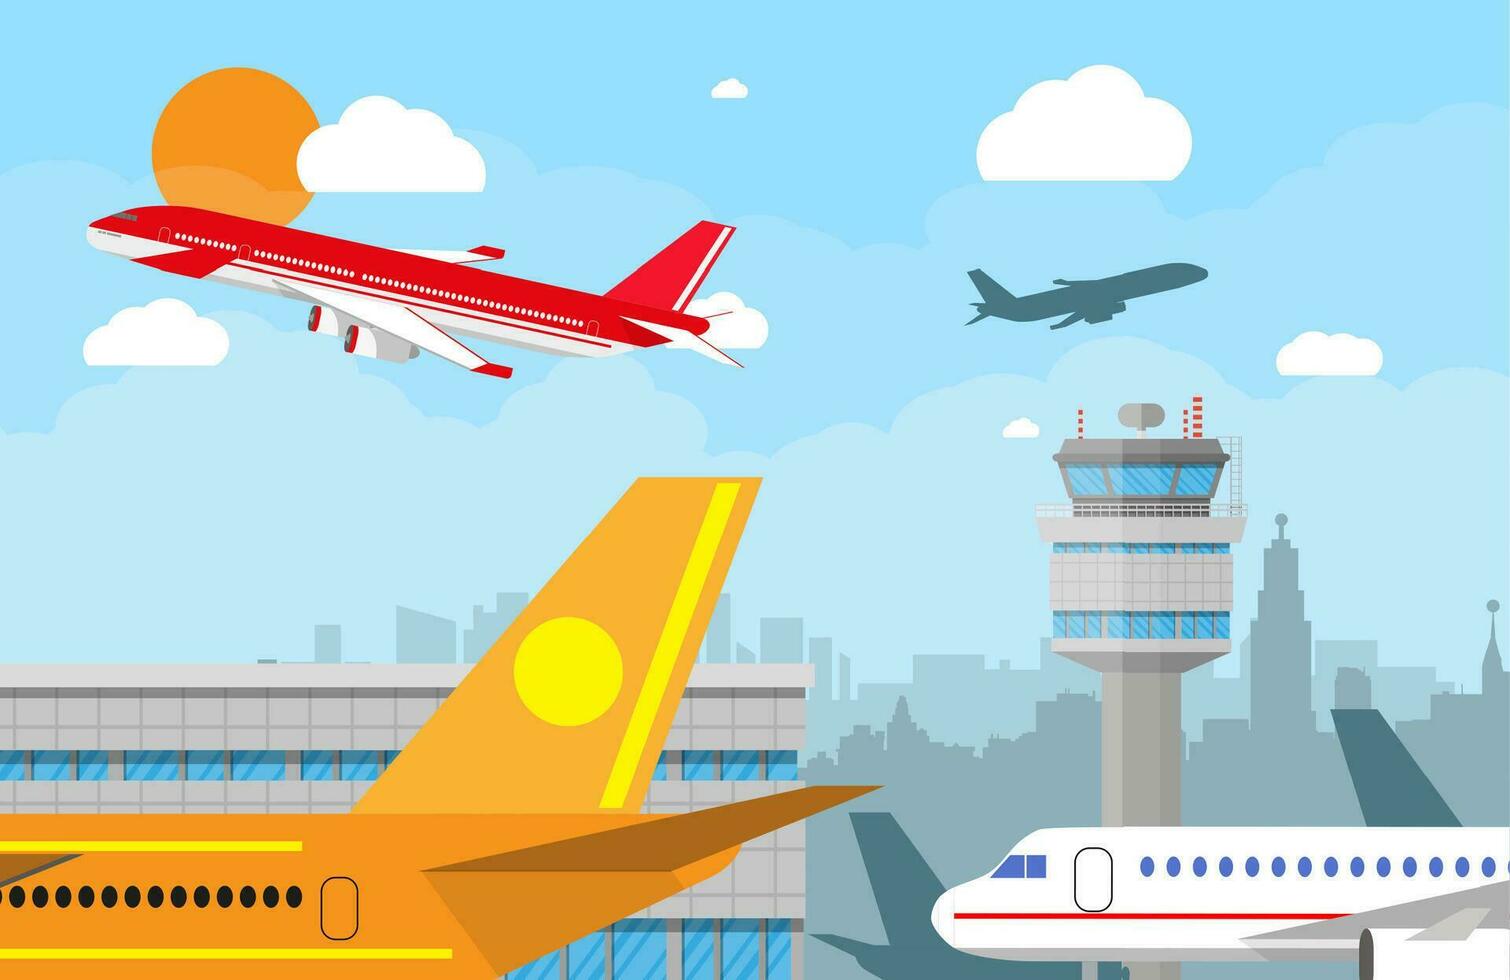 Karikatur Hintergrund mit grau Flughafen Steuerung Turm und fliegend rot bürgerlich Flugzeug nach nehmen aus im Blau Himmel mit Wolken, Sonne und Stadt Horizont Silhouette. Vektor Illustration im eben Design